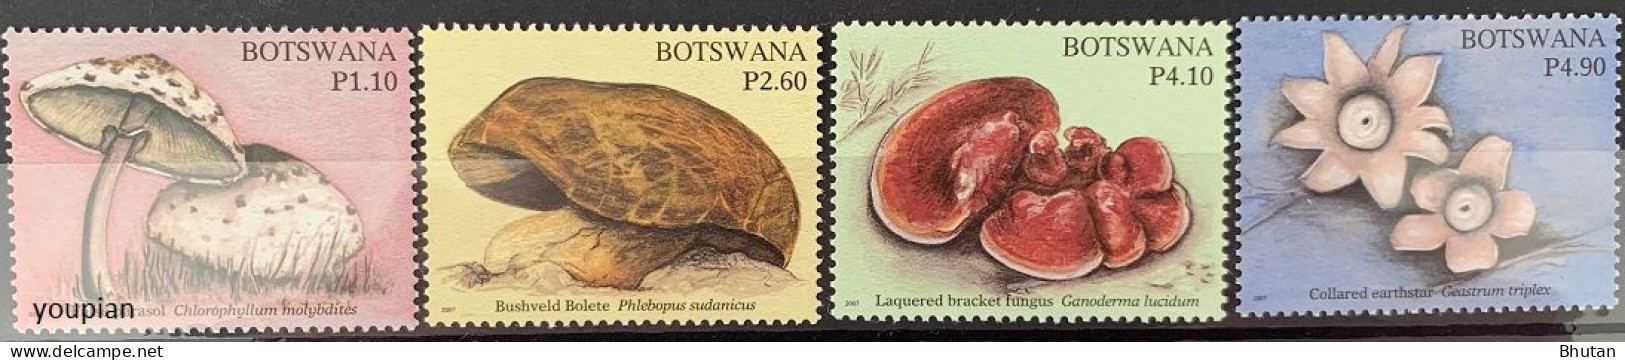 Botswana 2007, Mushrooms, MNH Stamps Set - Botswana (1966-...)